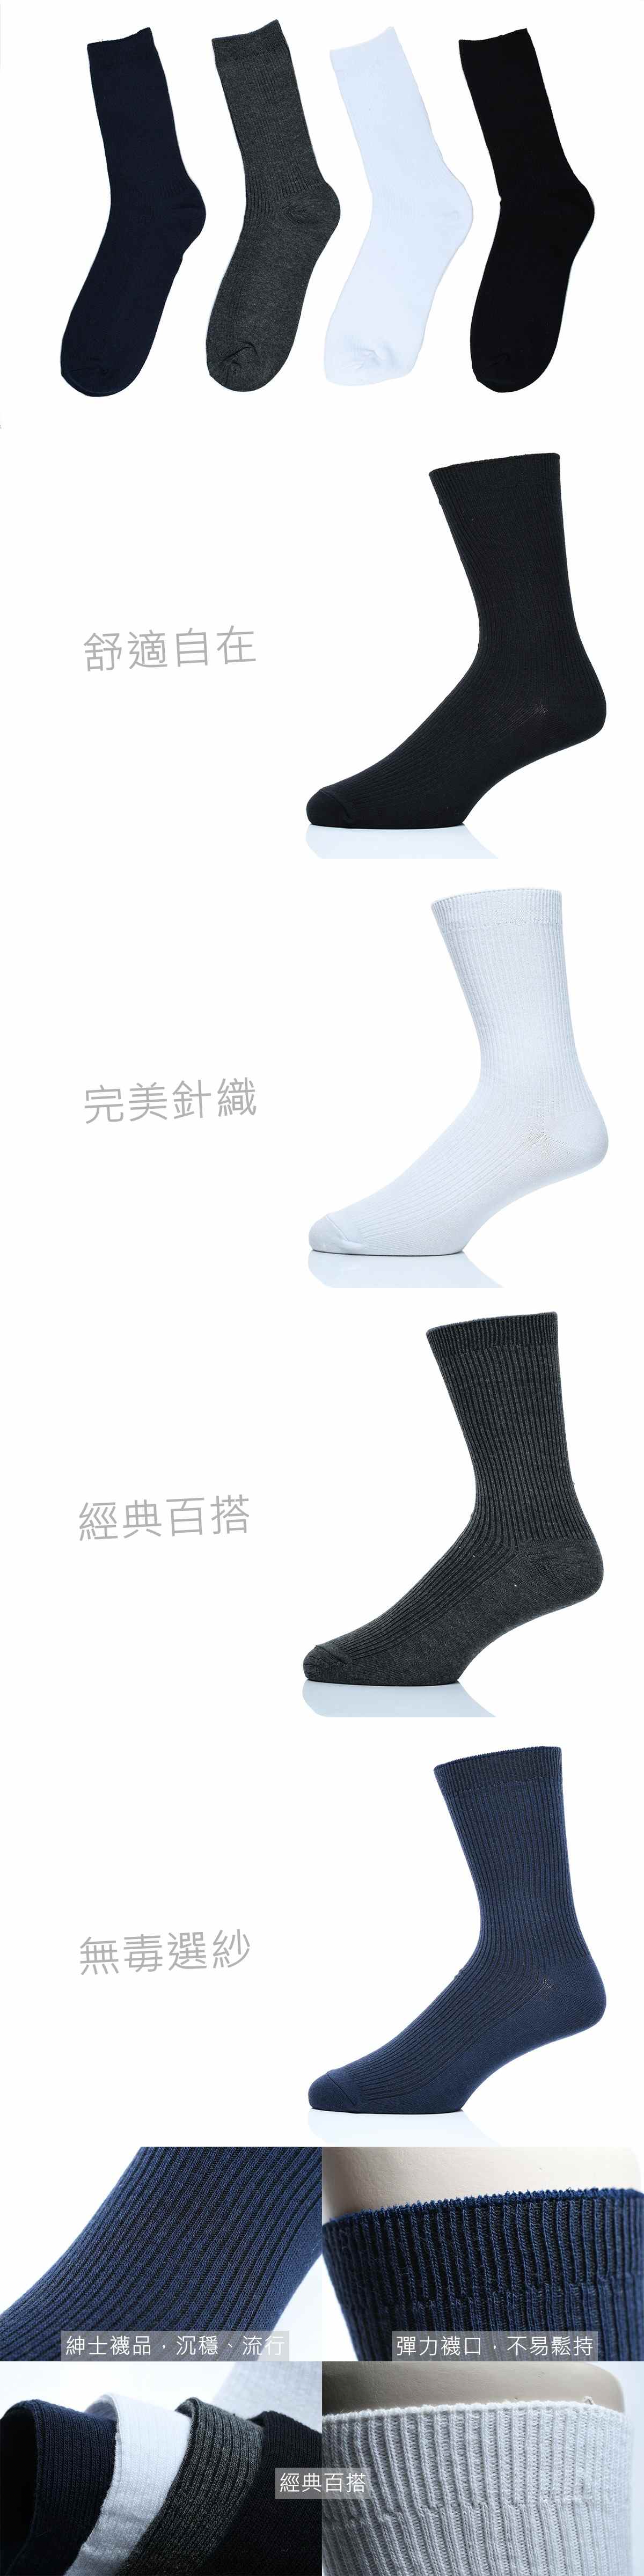 中筒素色绅士袜(平面)